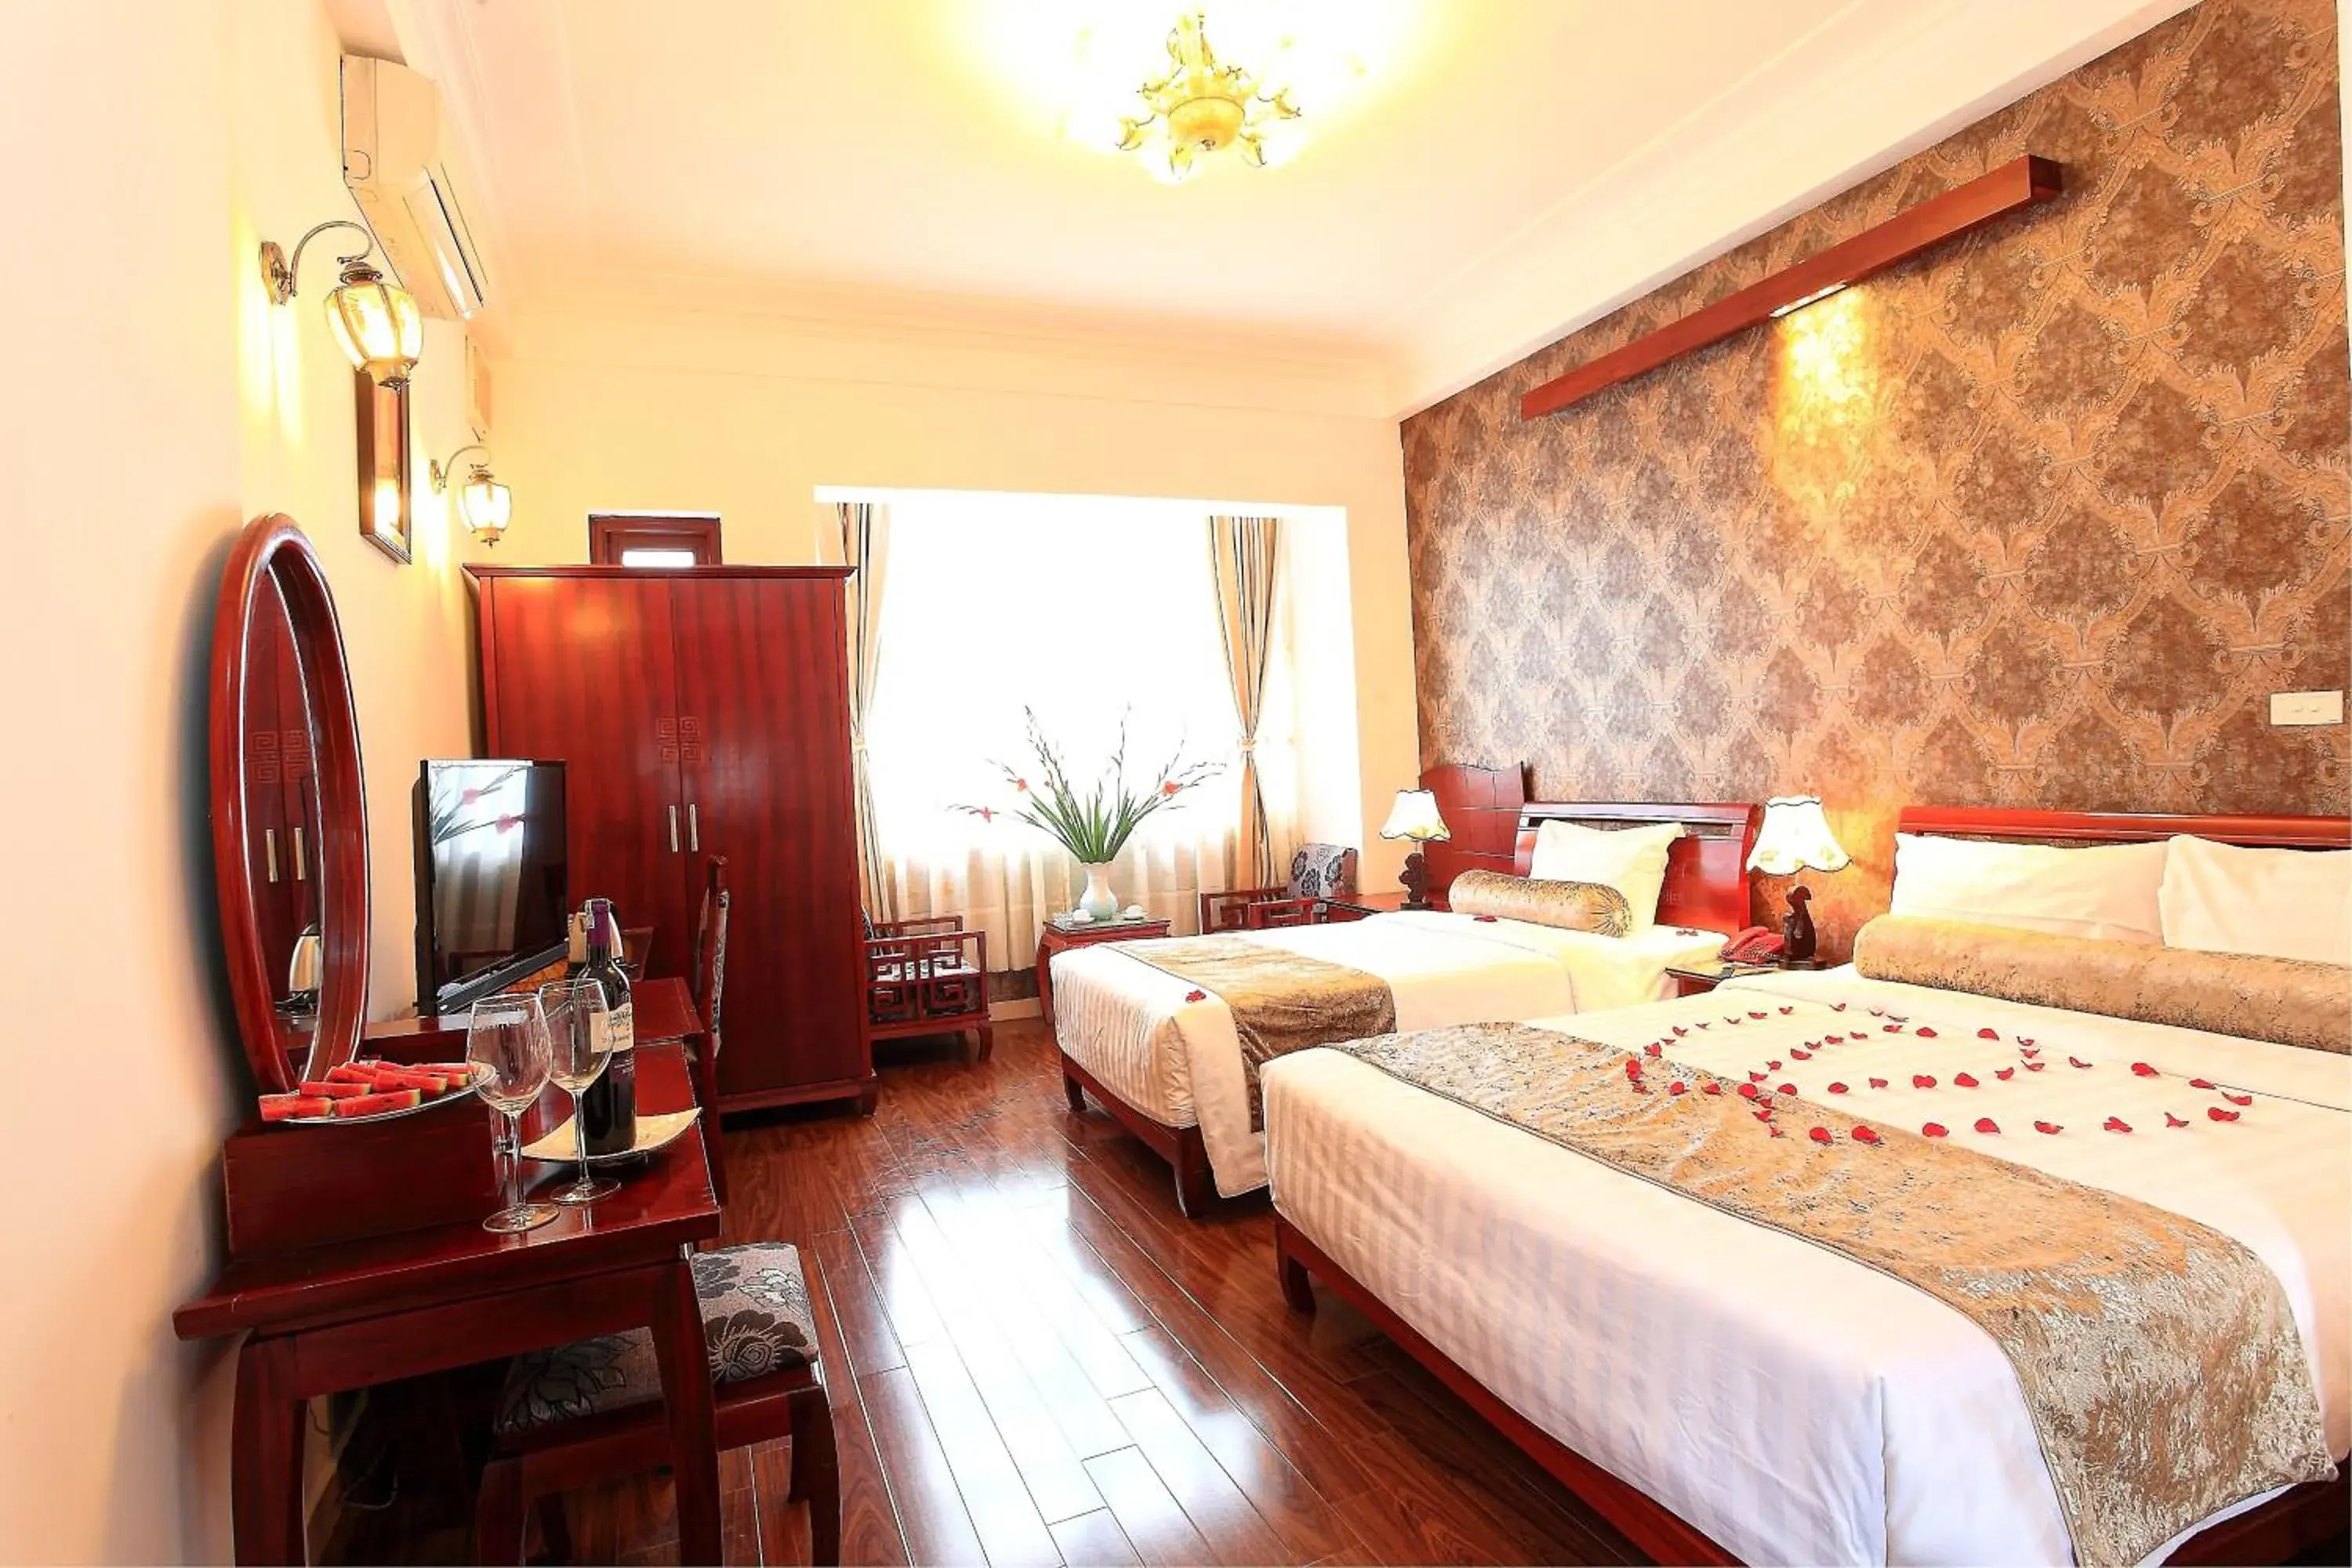 Bed in Hanoi Luxury Hotel